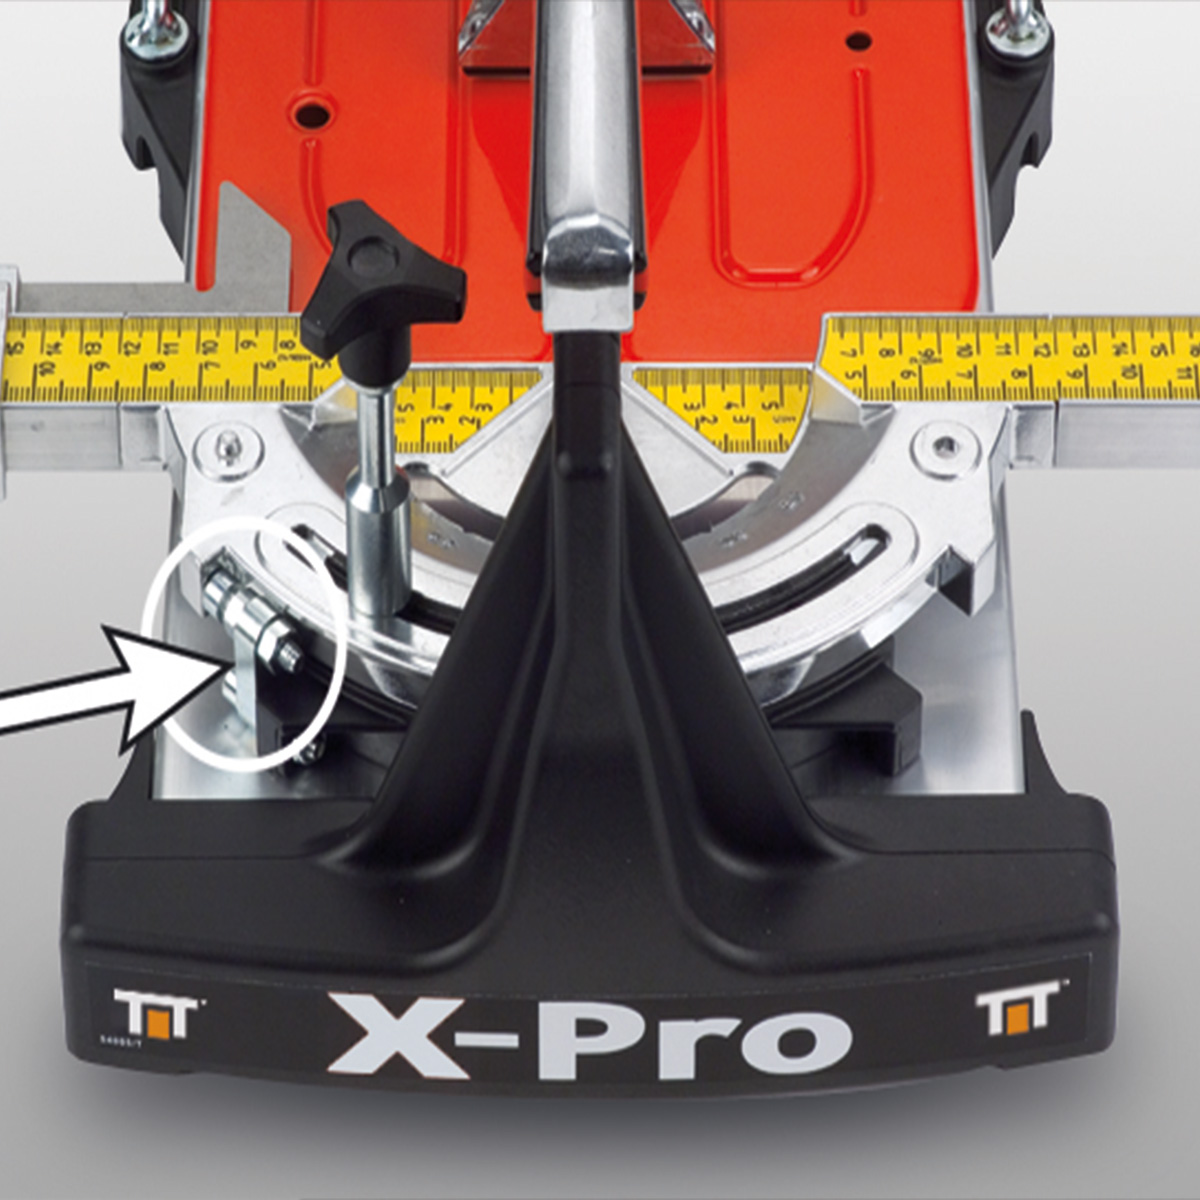 X-PRO 100 ručni sekač pločica 